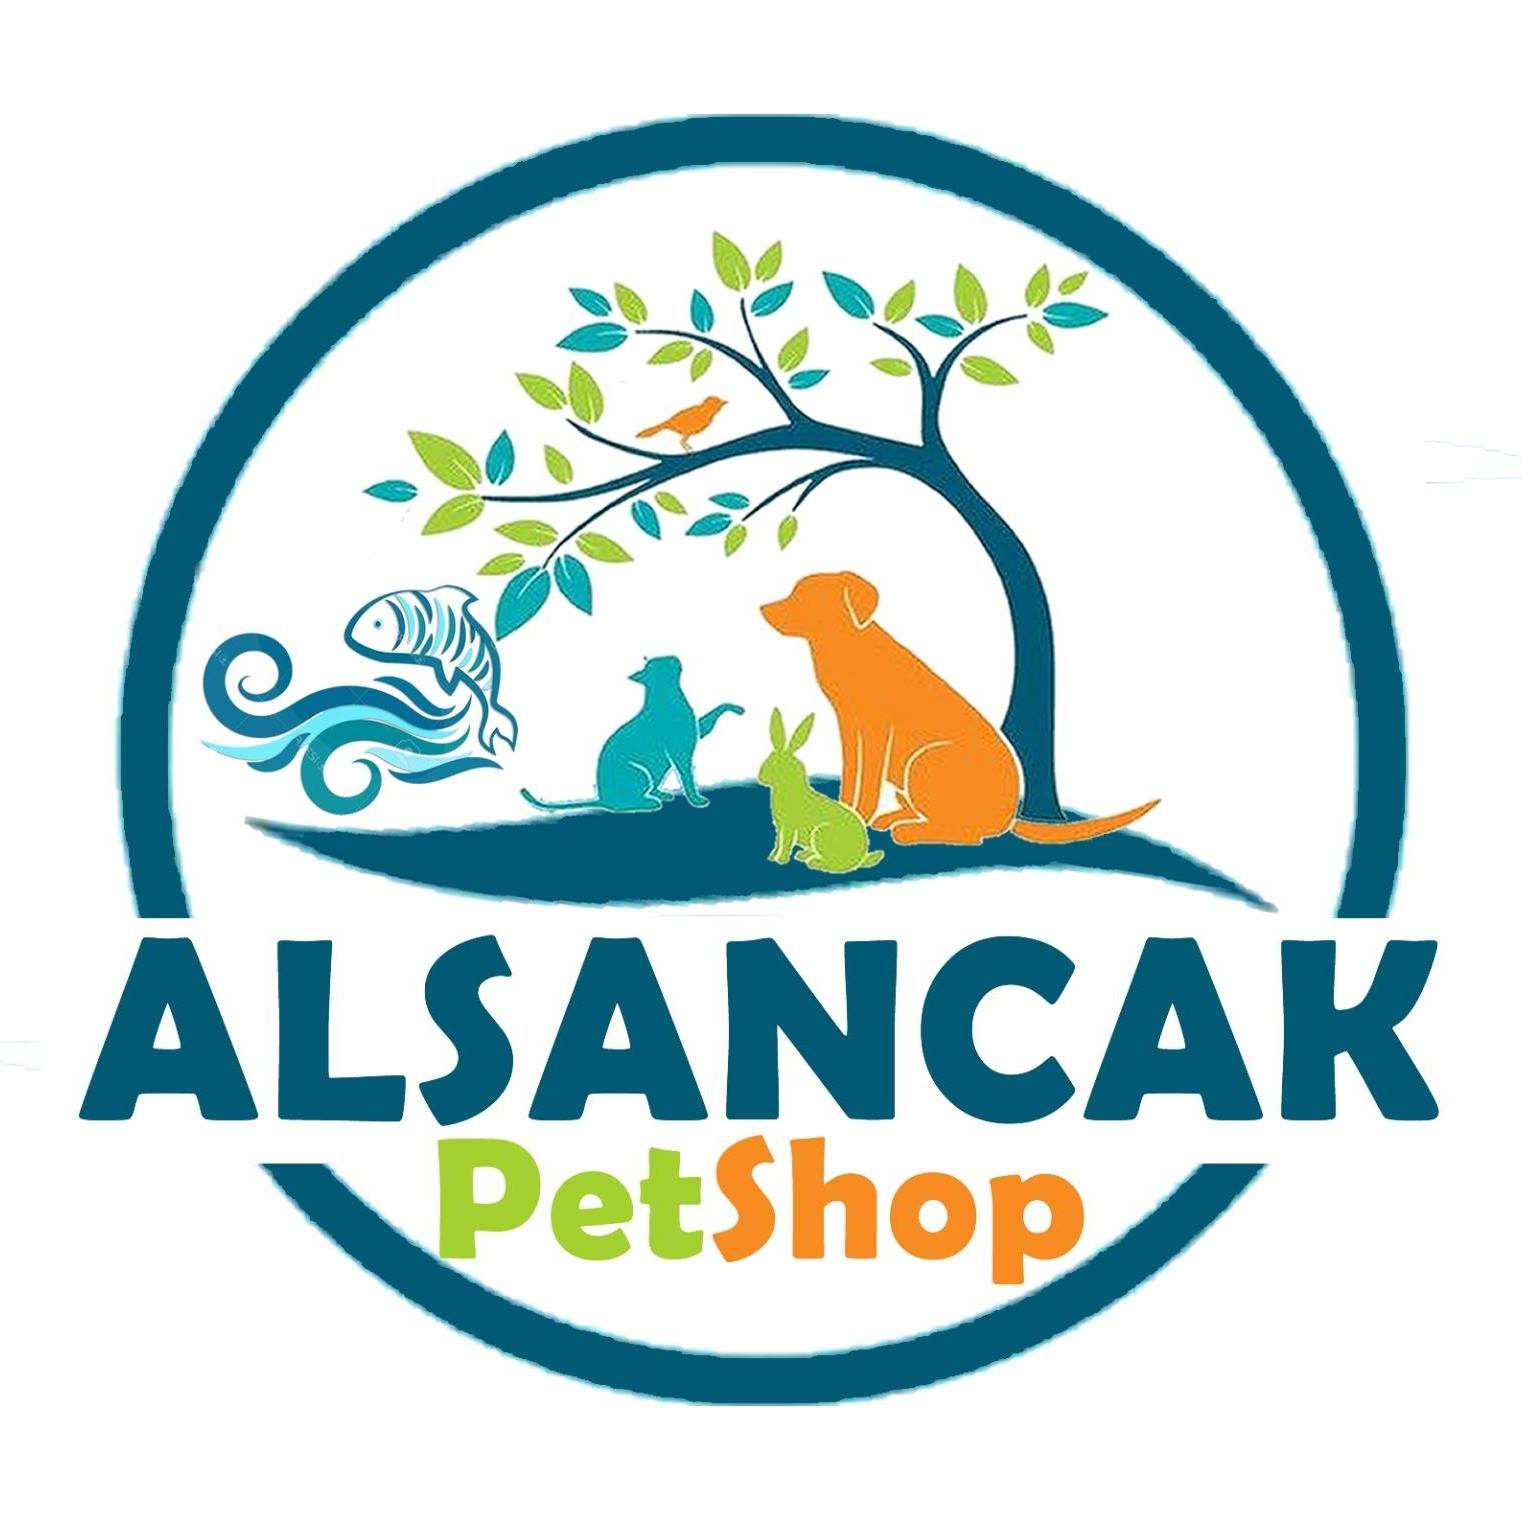 Alsancak PetShop Akvaryum ve Evcil Hayvan Ürünleri